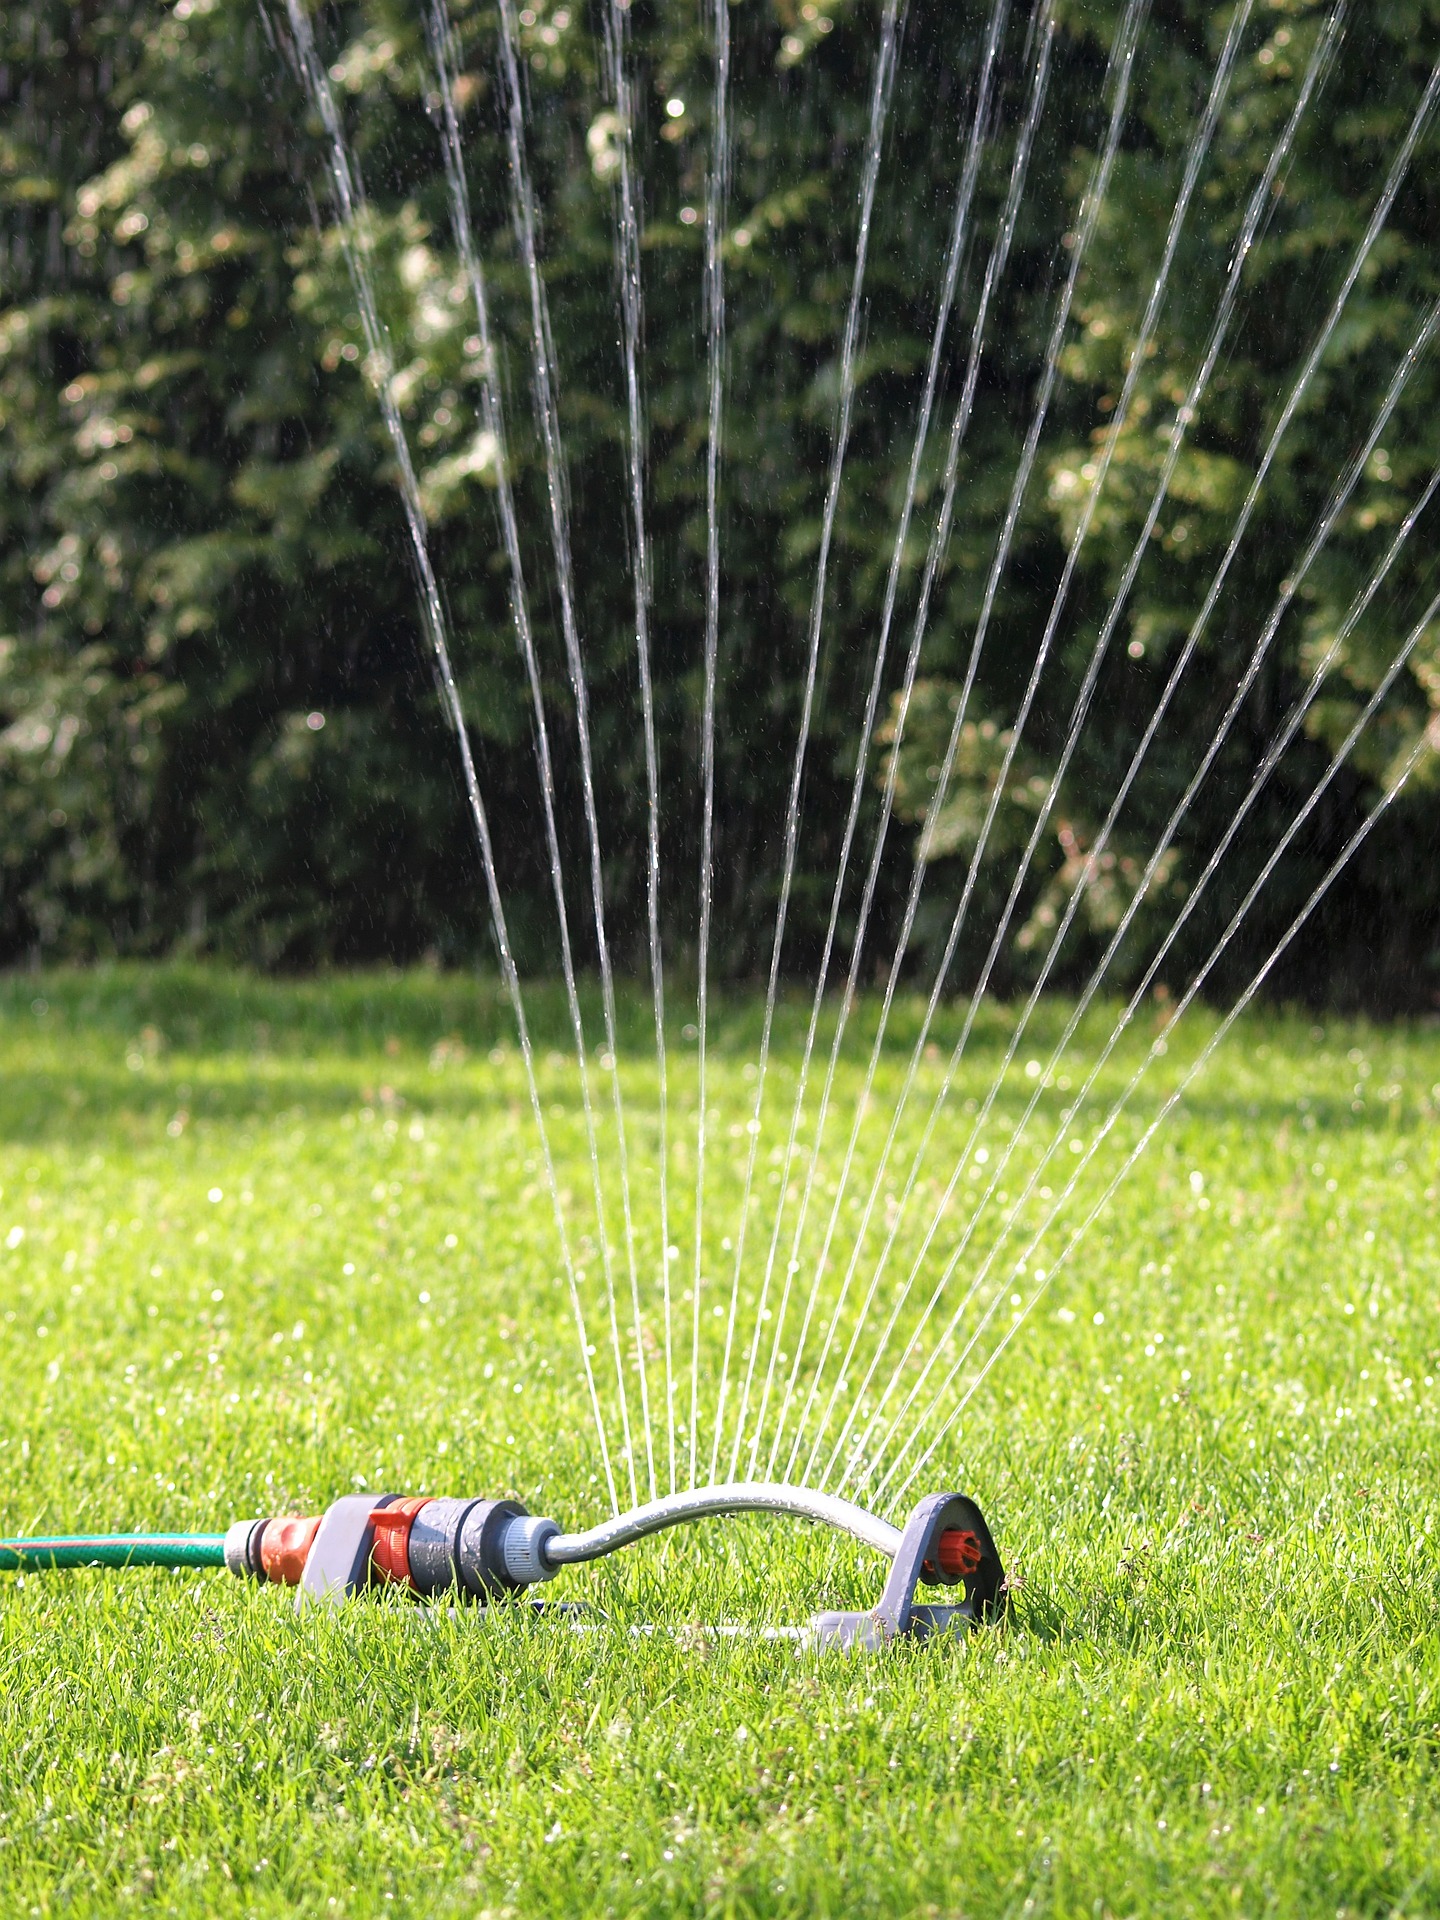 best rated lawn sprinklers: lawn sprinklers for low water pressure